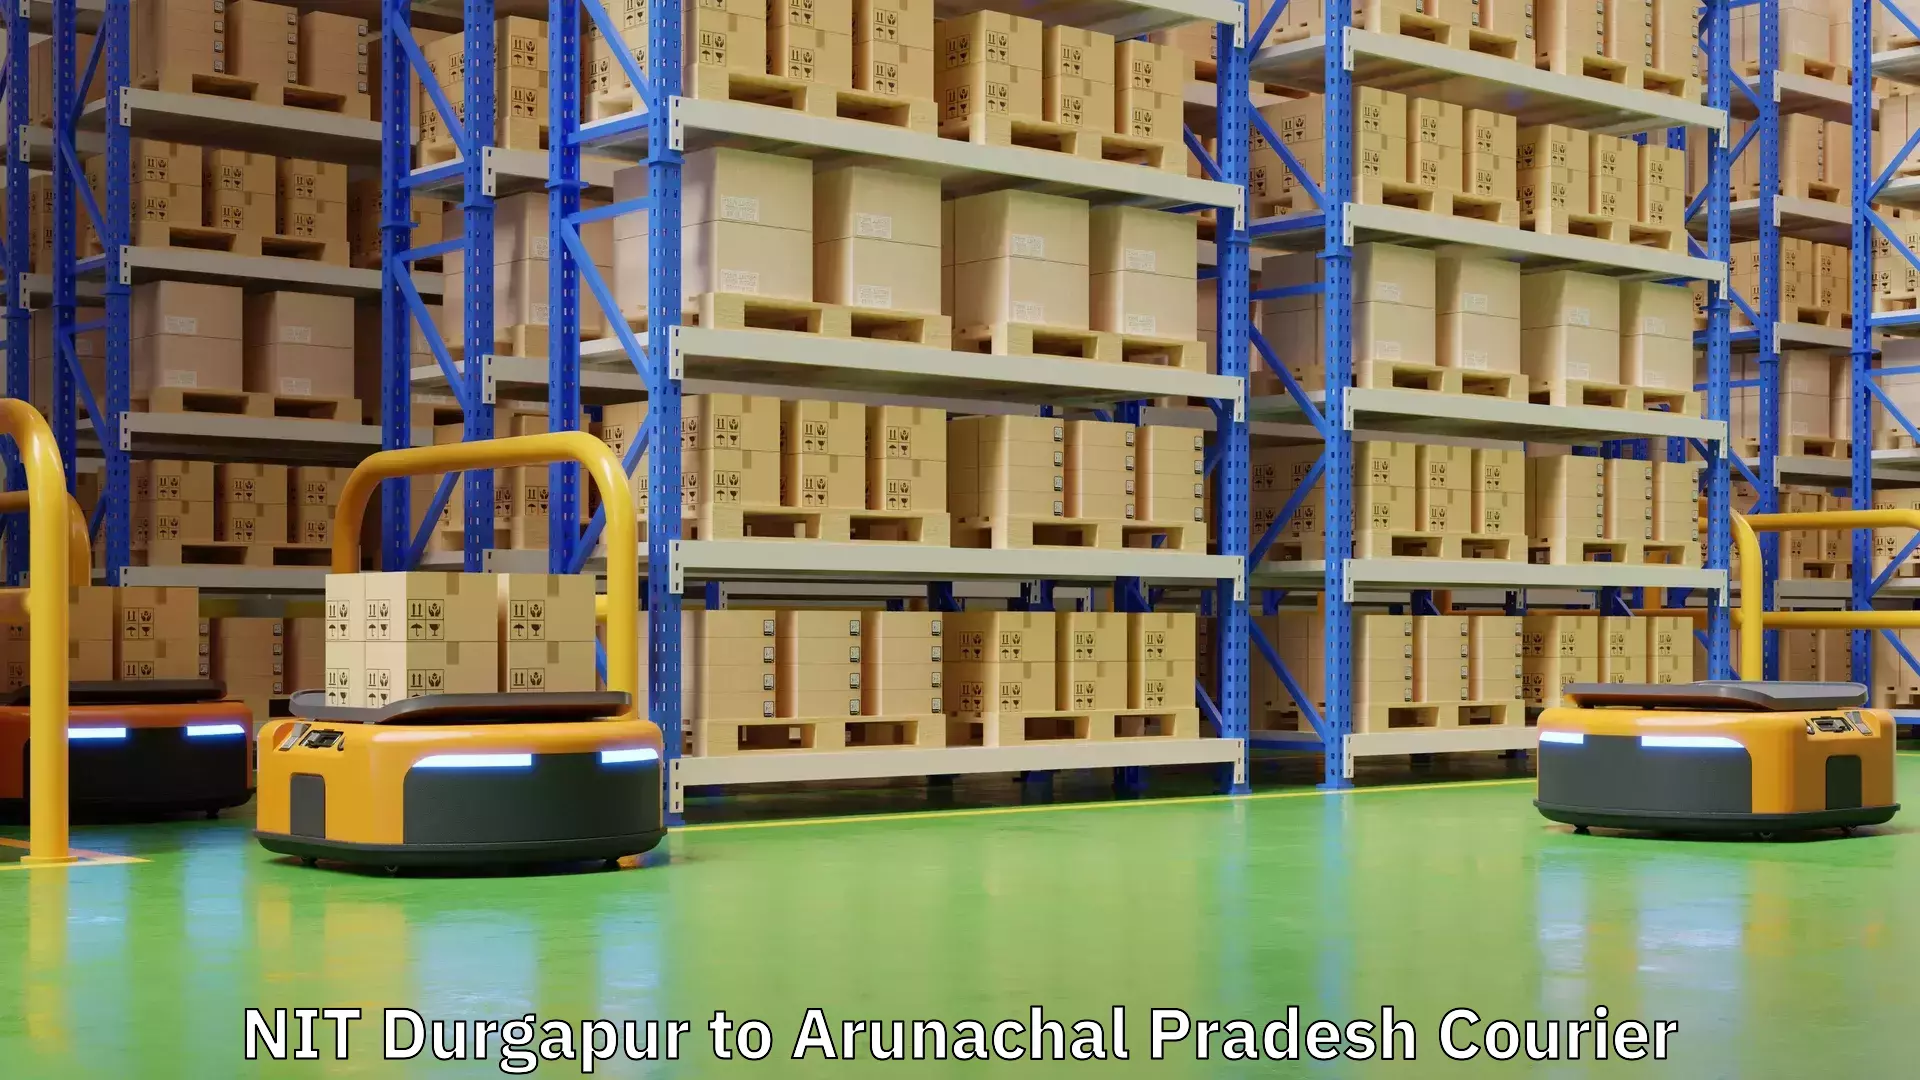 Customer-oriented courier services NIT Durgapur to Arunachal Pradesh